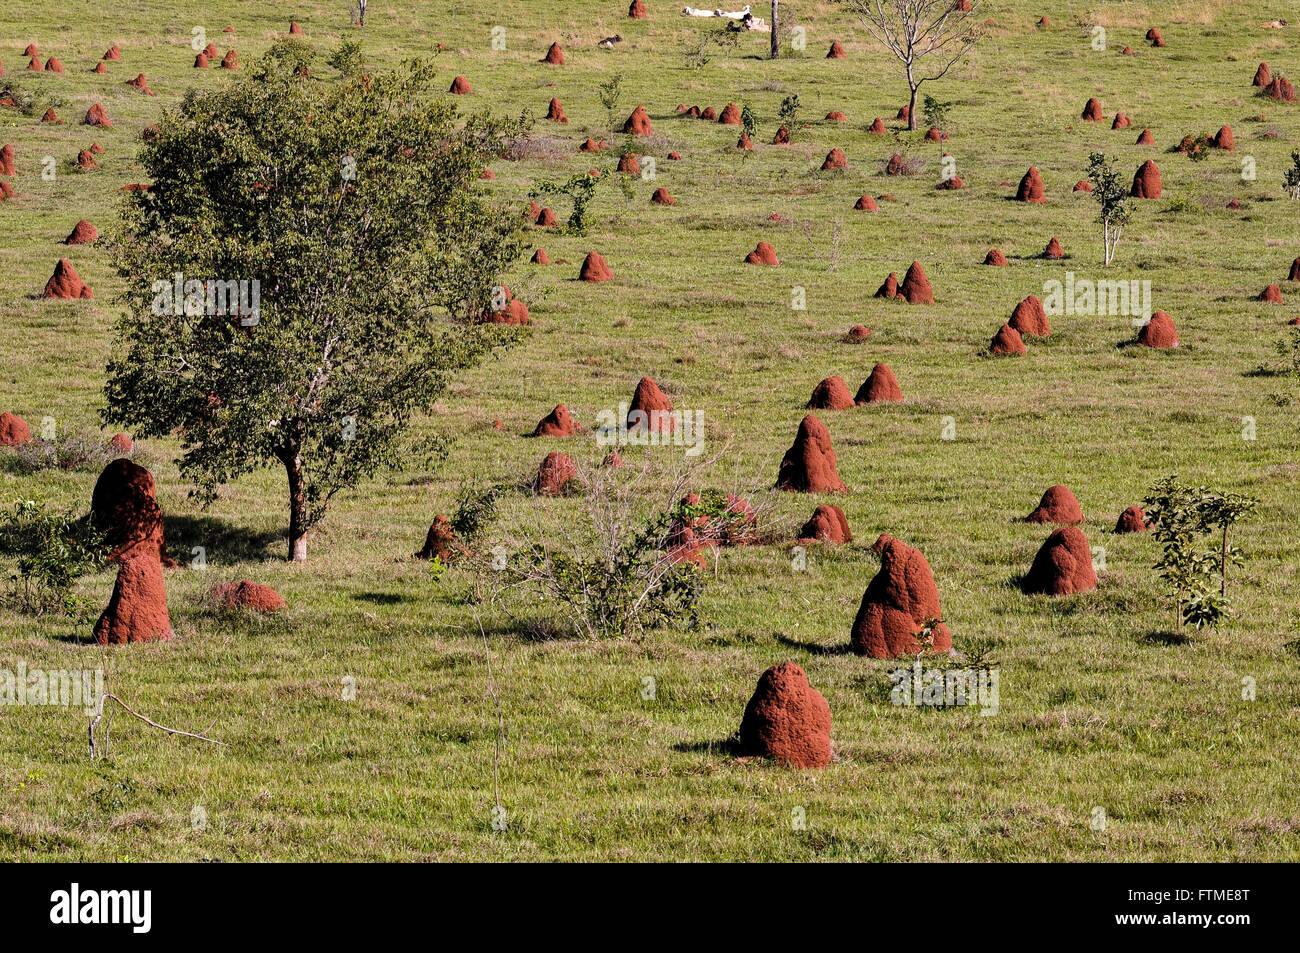 Las termitas en pastizales en las zonas rurales Foto de stock